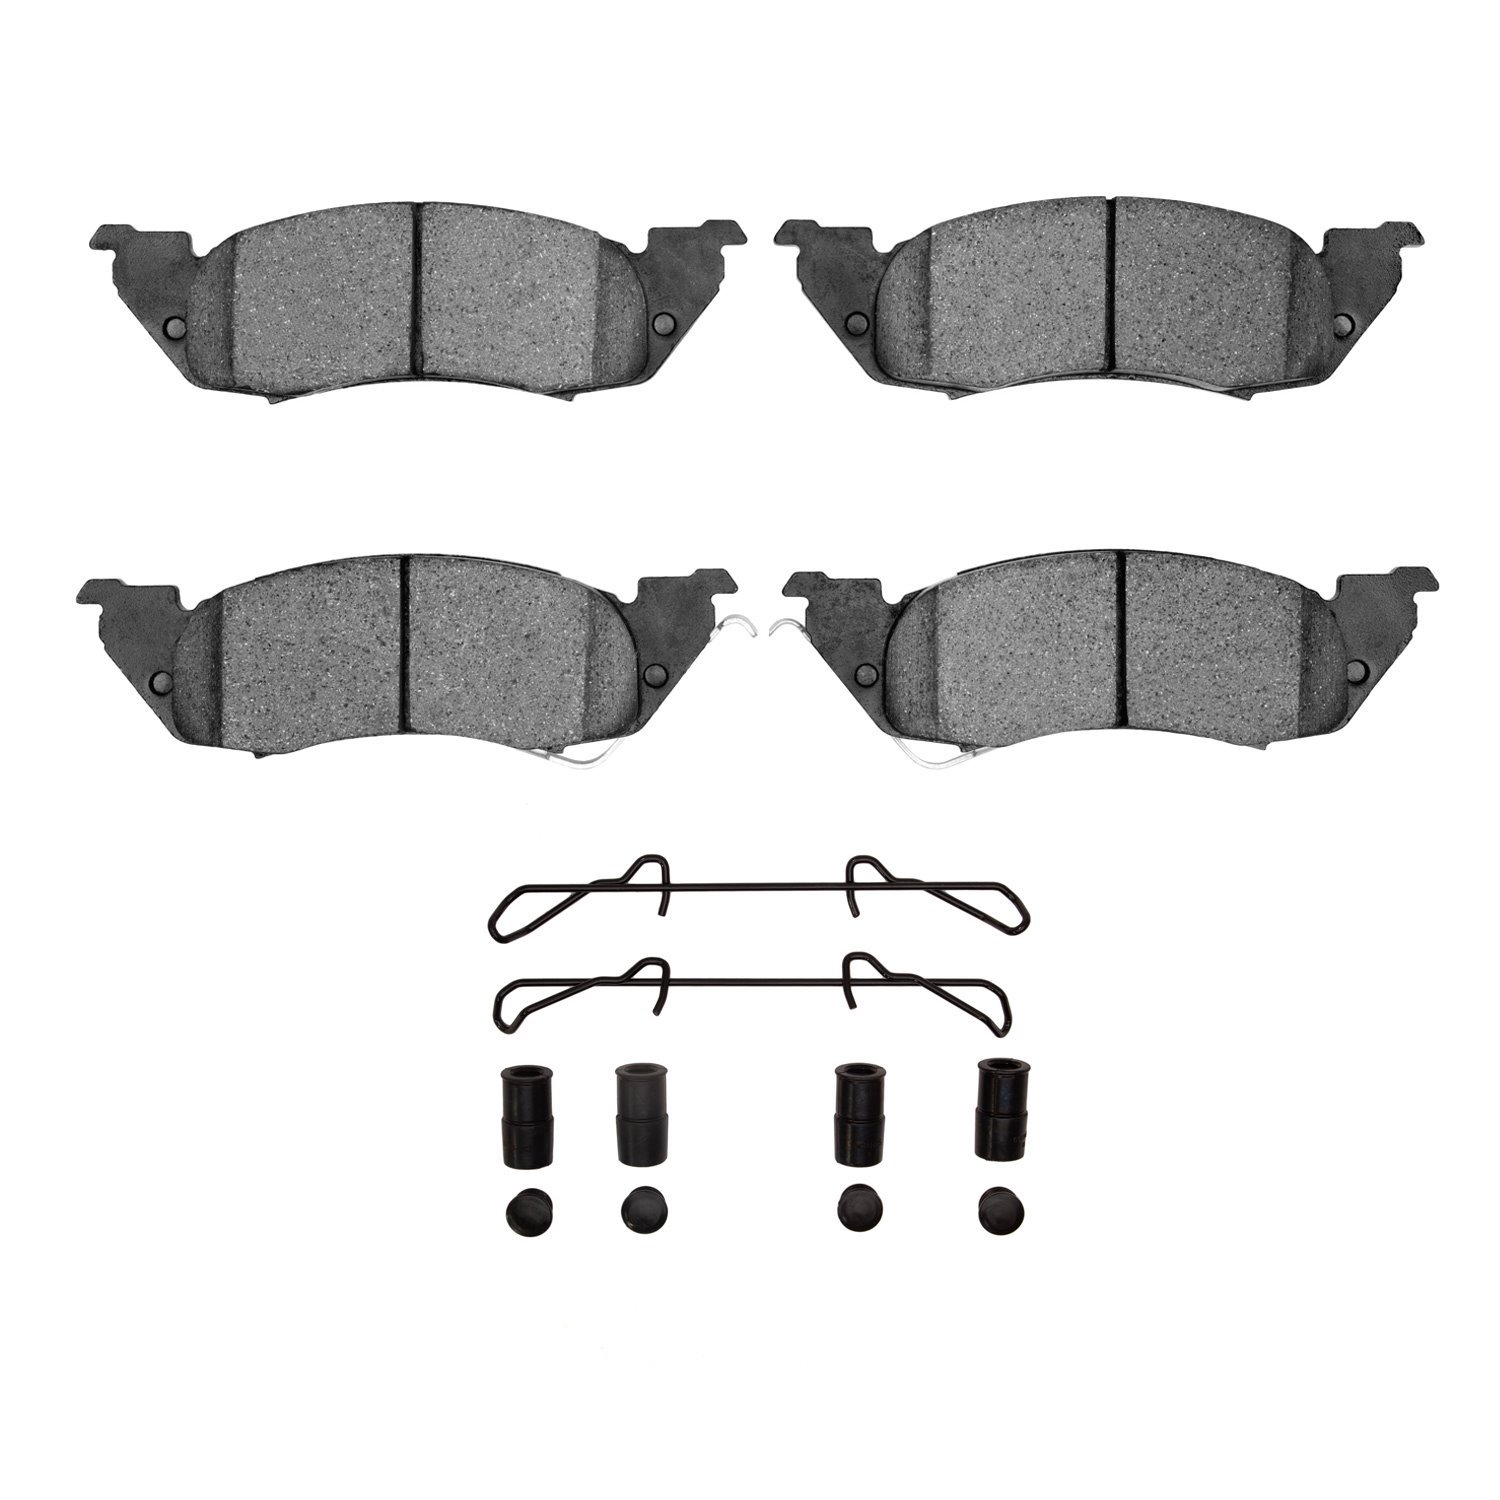 1311-0529-02 3000-Series Semi-Metallic Brake Pads & Hardware Kit, 1991-1998 Mopar, Position: Front